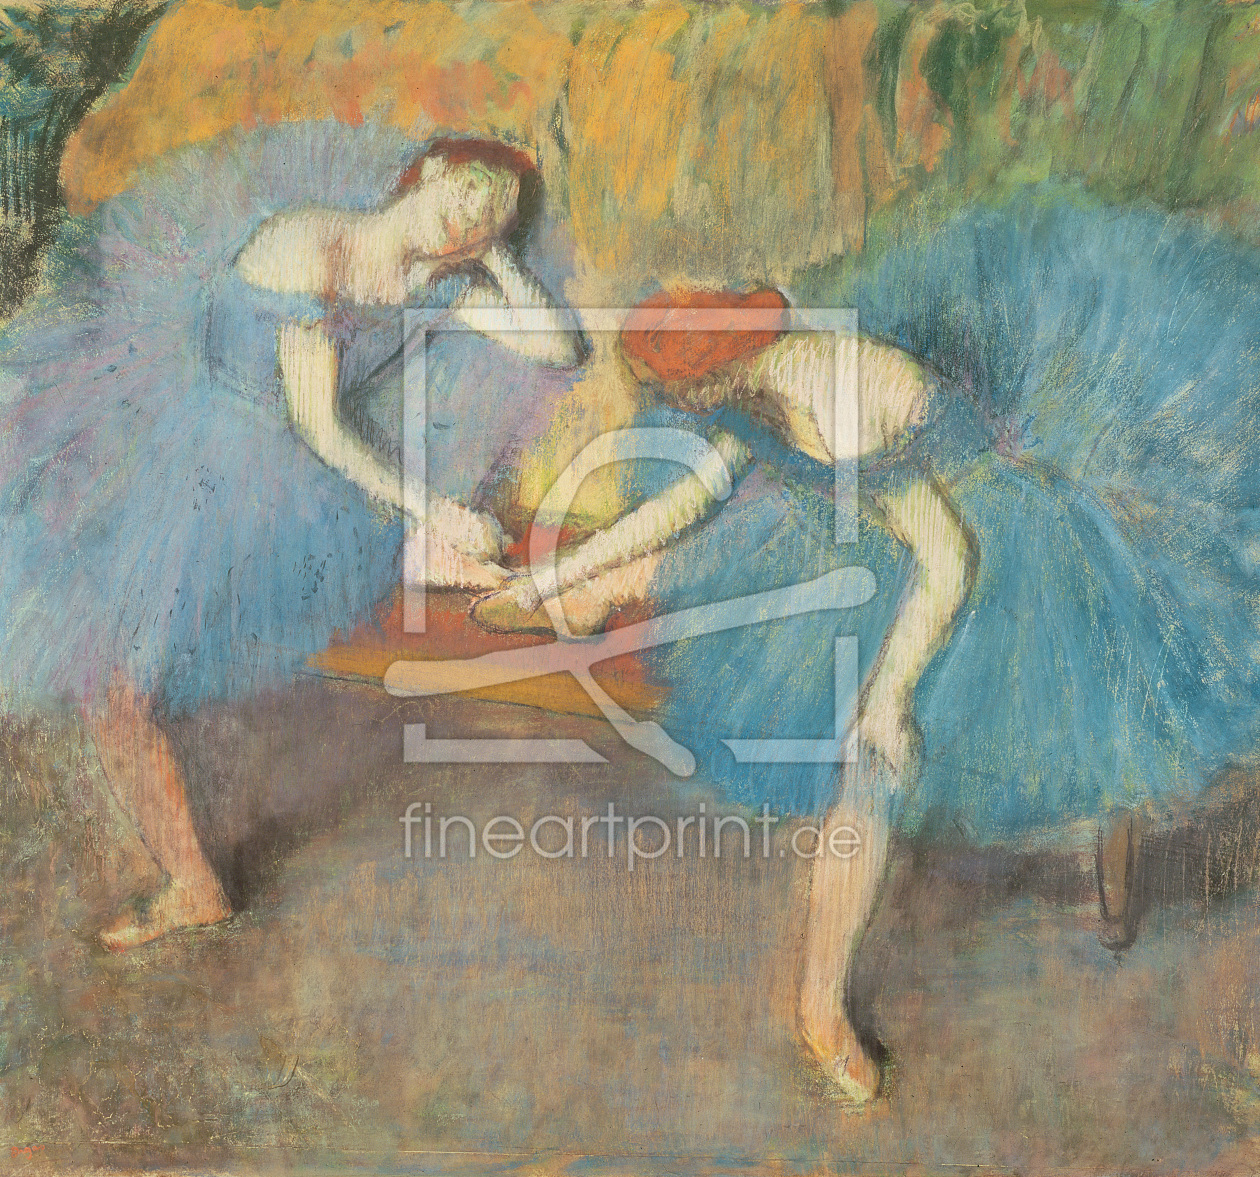 Bild-Nr.: 31002389 Two Dancers at Rest or, Dancers in Blue, c.1898 erstellt von Degas, Edgar